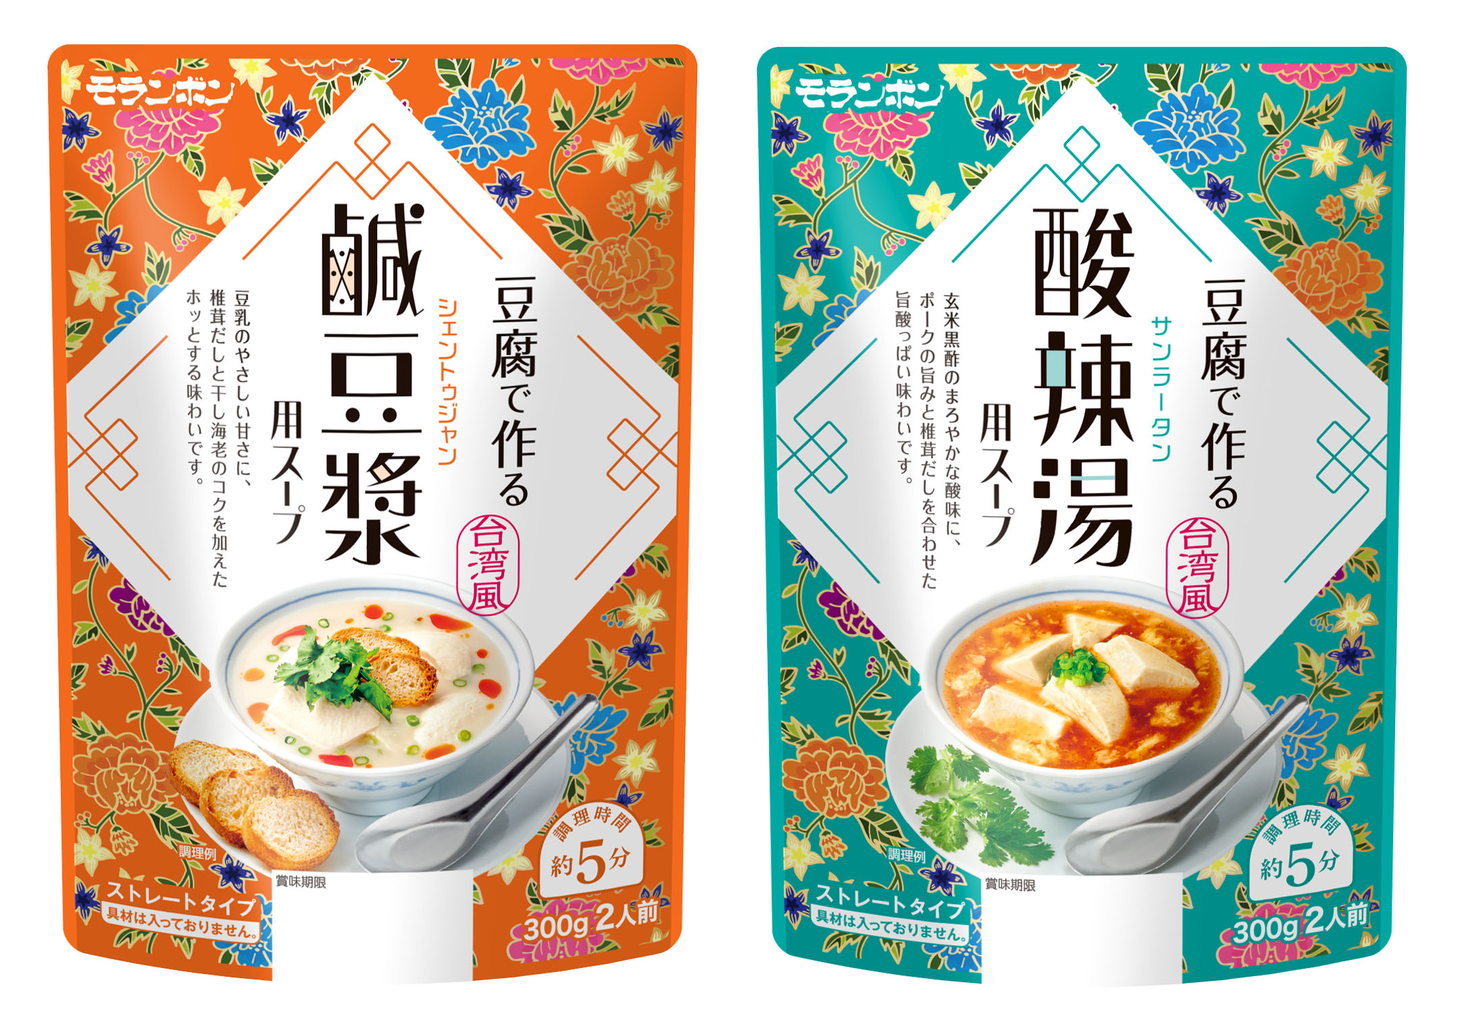 中華のおせち贈り物 モランボン 豆腐で作るシェントゥジャン用スープ 3